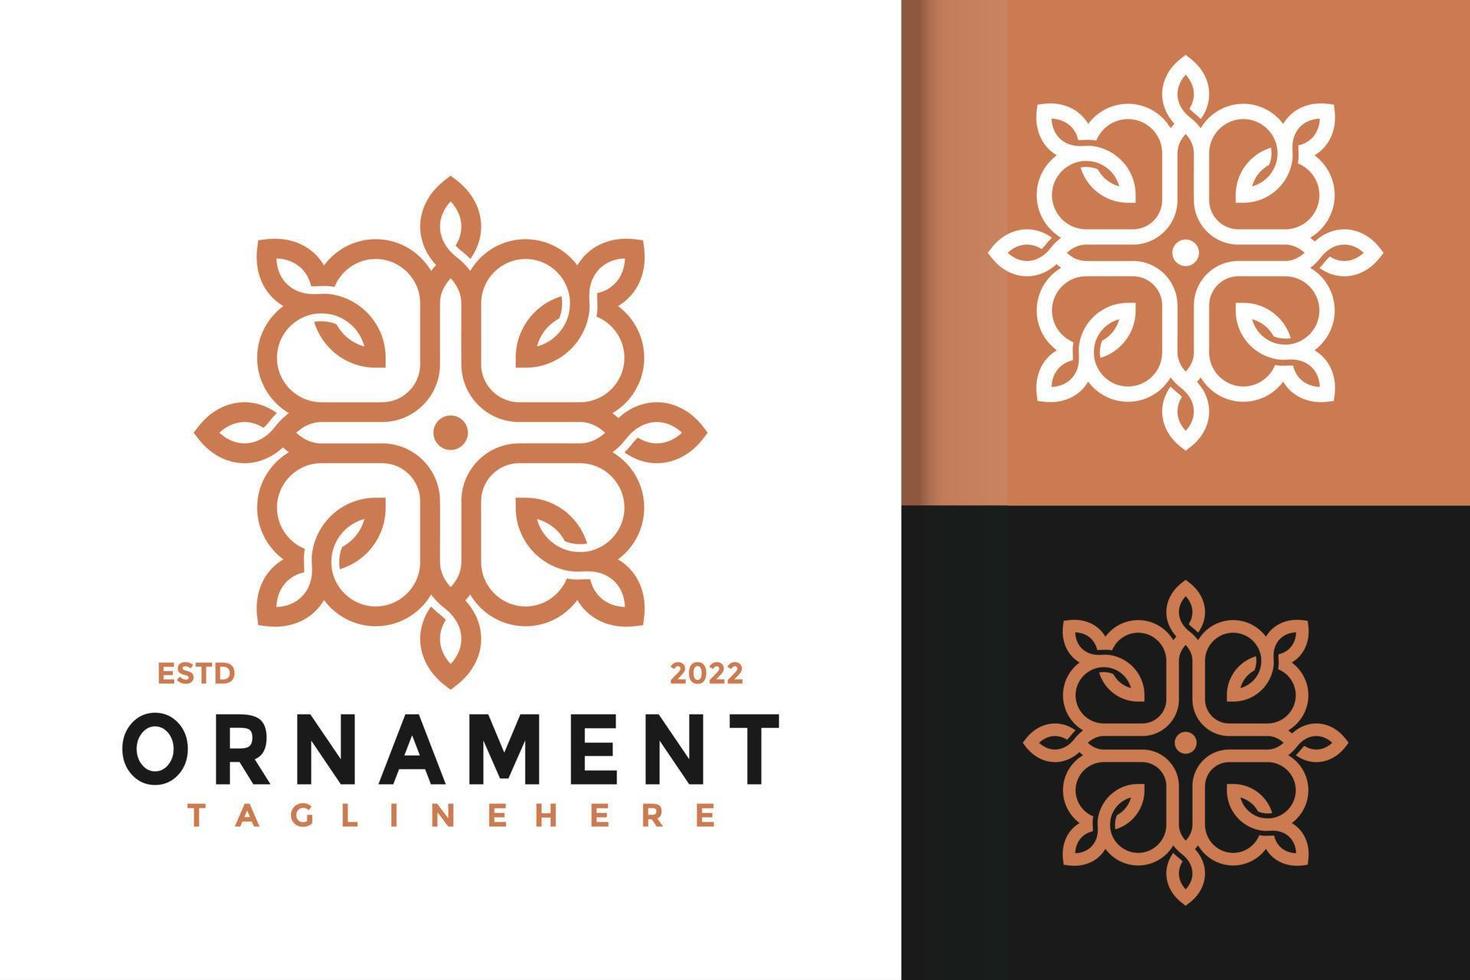 conception abstraite de logo d'ornement de fleur, image vectorielle de logos d'identité de marque, logo moderne, modèle d'illustration vectorielle de dessins de logo vecteur